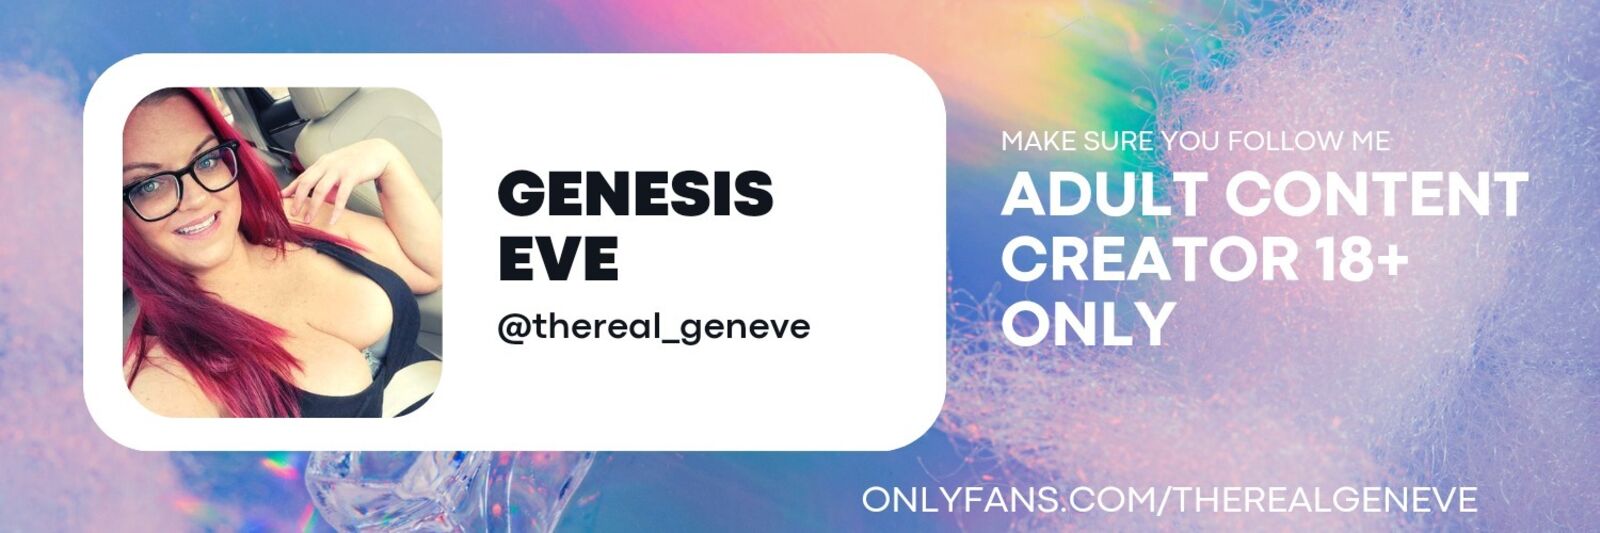 See Genesis Eve profile